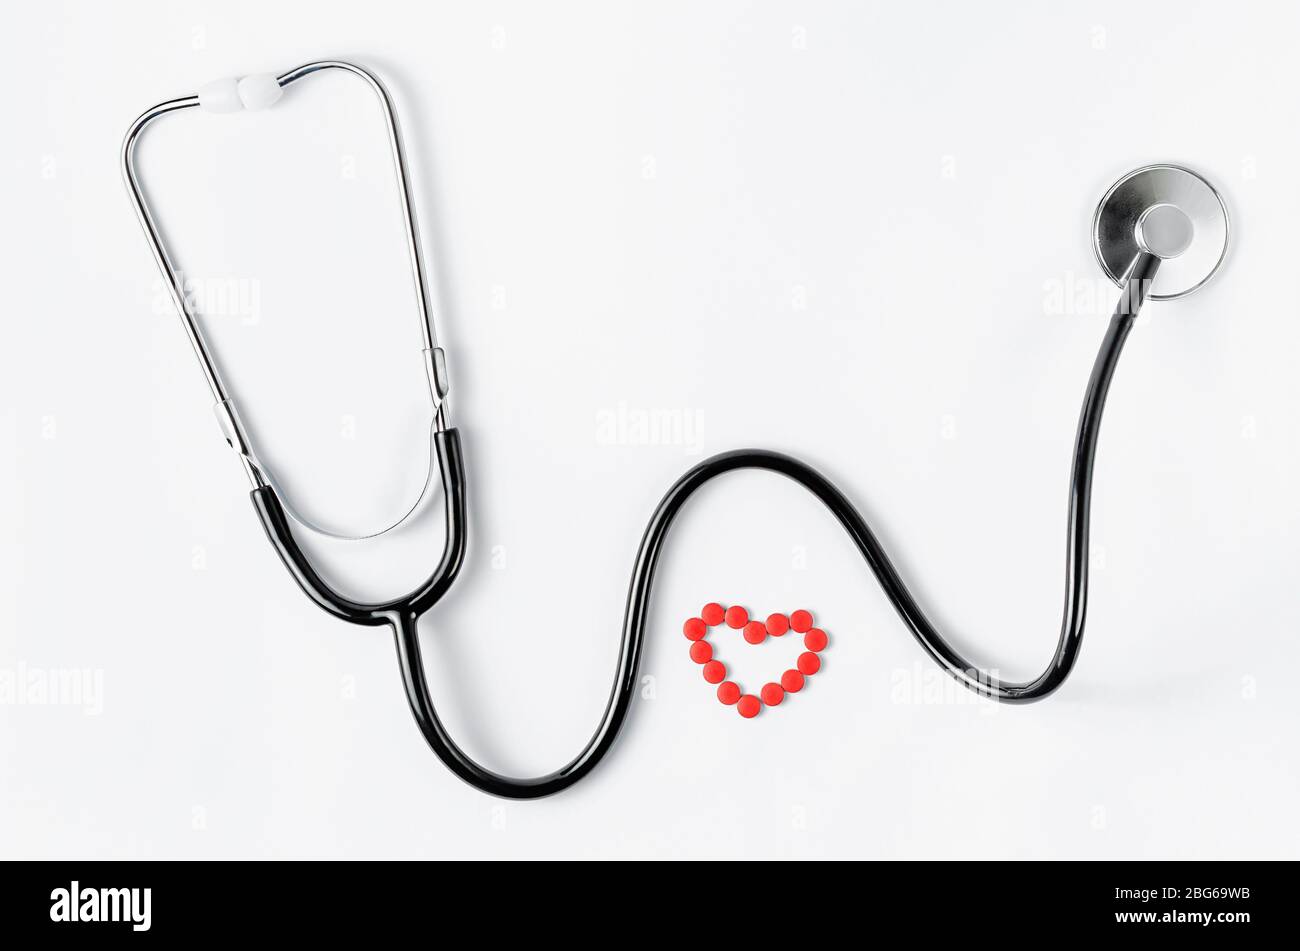 Système cardiovasculaire. Stéthoscope et pilules rouges en forme de coeur sur fond blanc. Espace de copie. Vue de dessus Banque D'Images